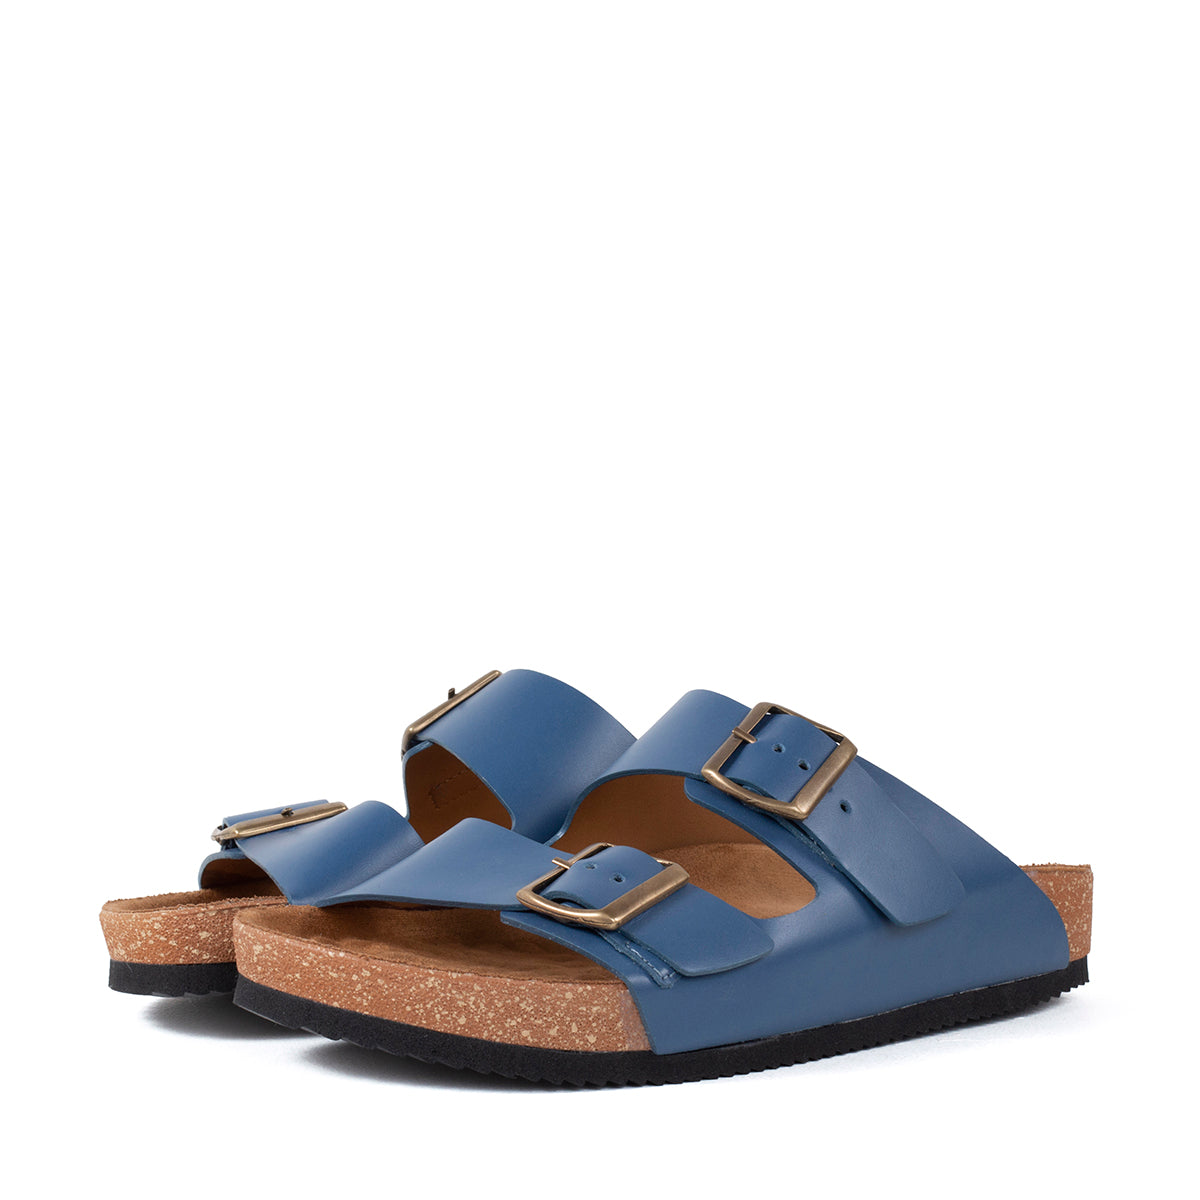 Sandalias planas de cuero color azul con hebilla cuadrada